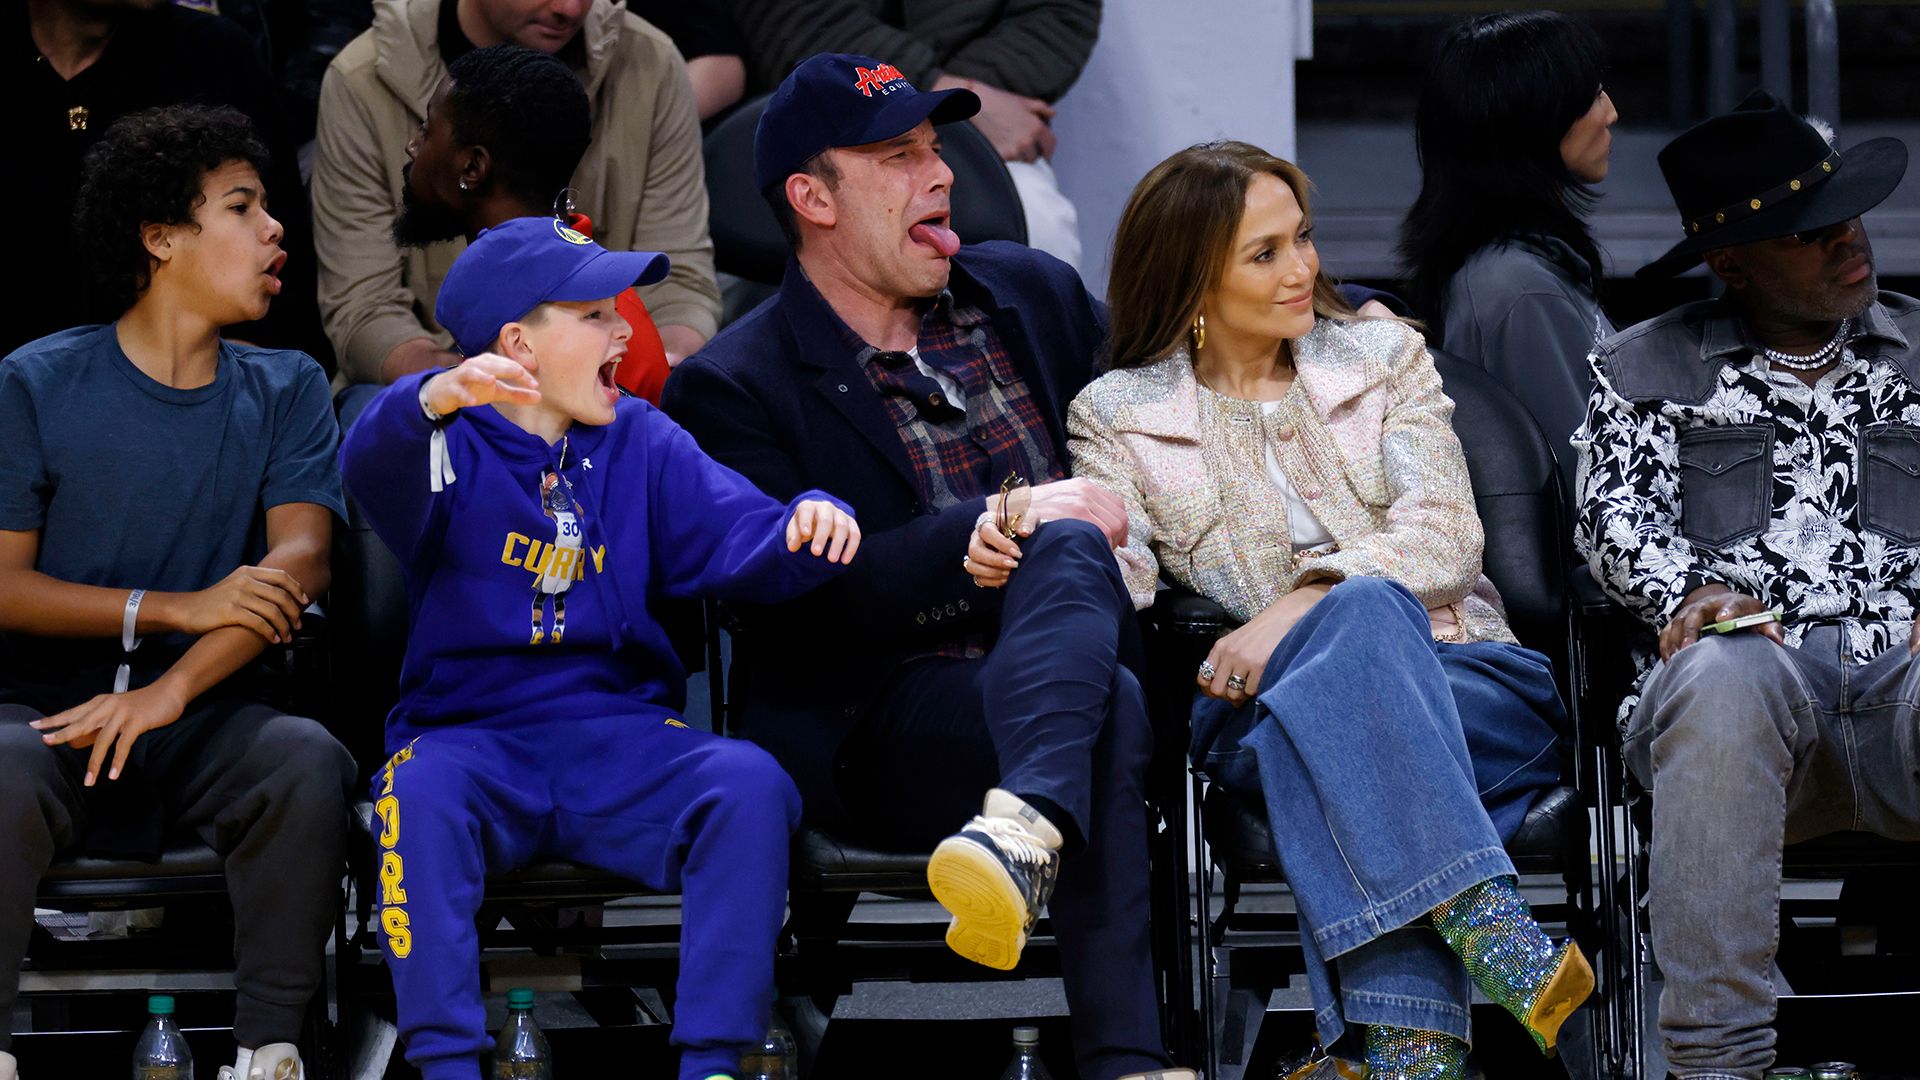 Samuel Garner Affleck, Ben Affleck and Jennifer Lopez at a basketball game